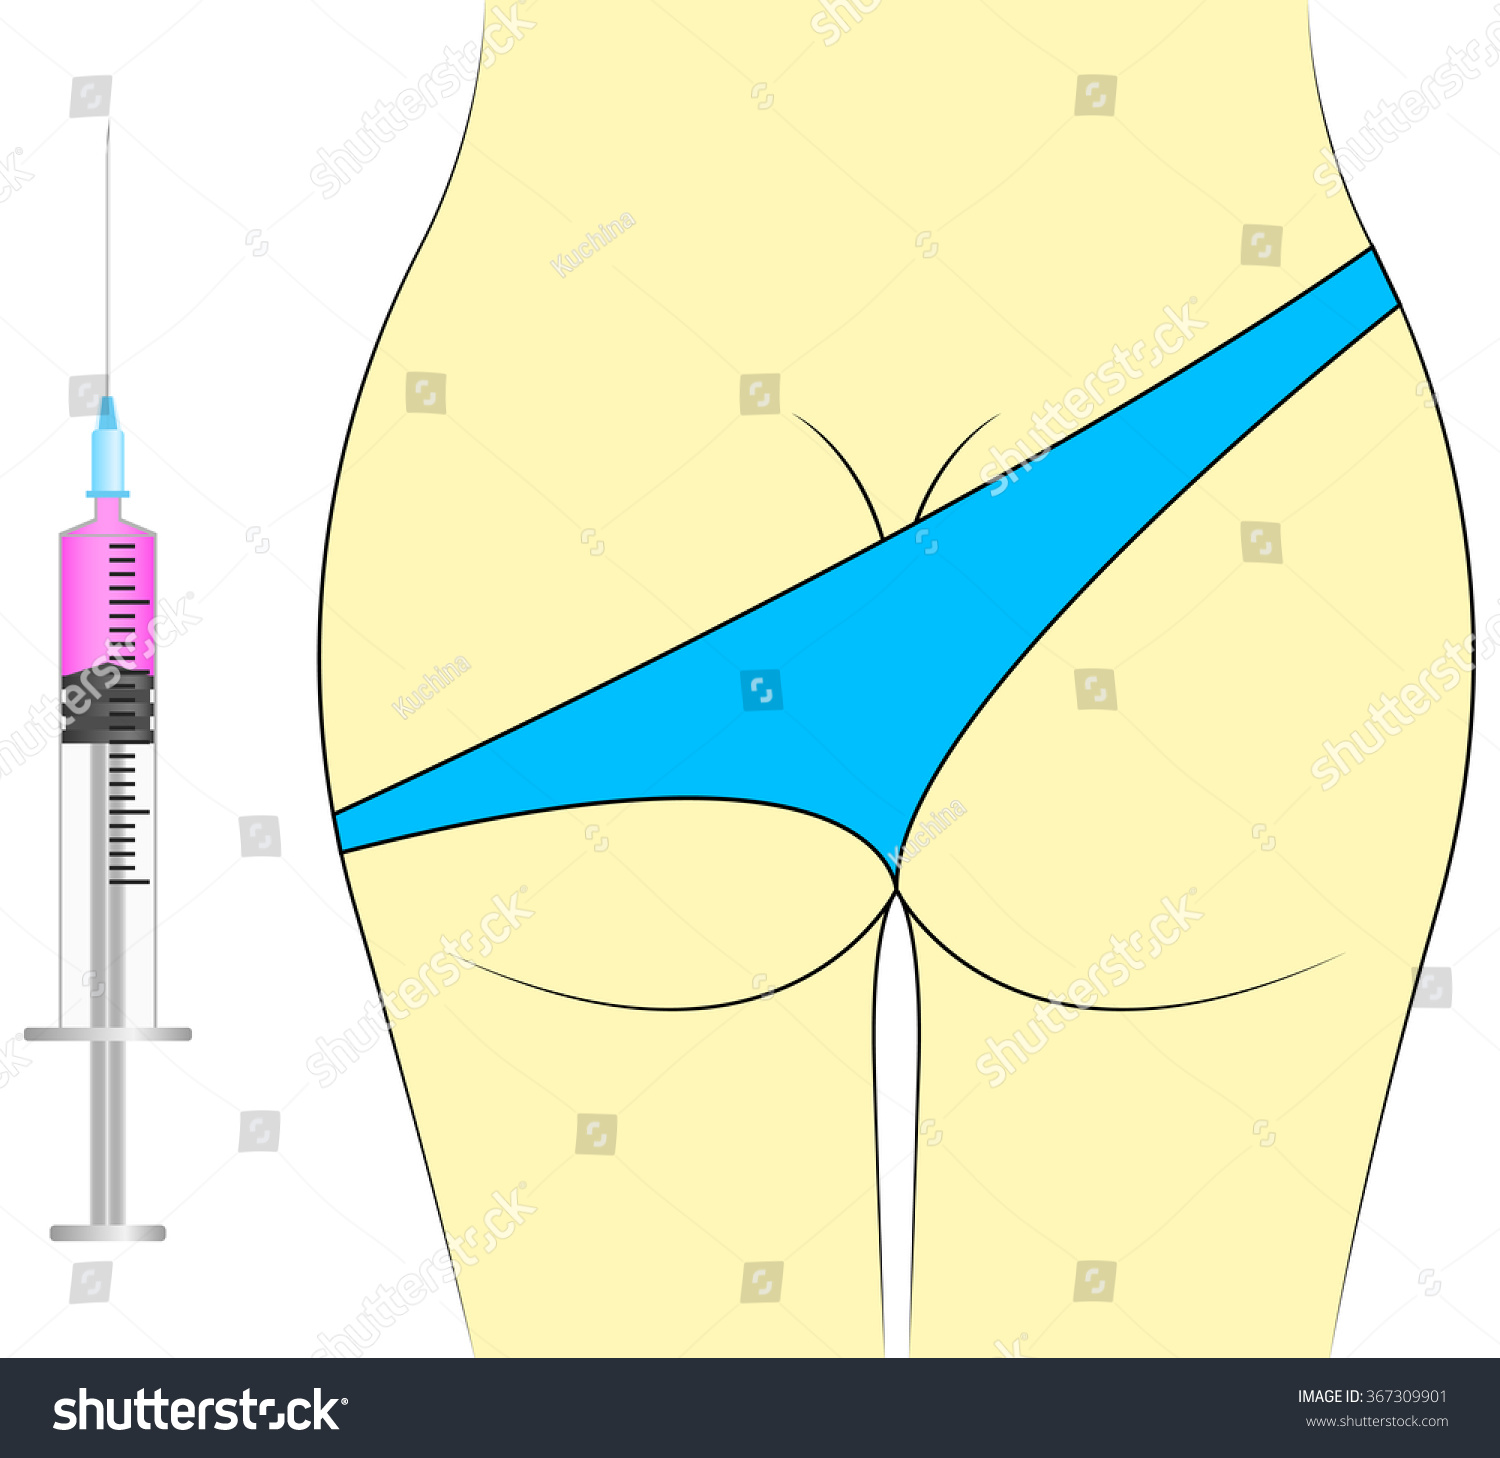 Im injection butt ass shot needle